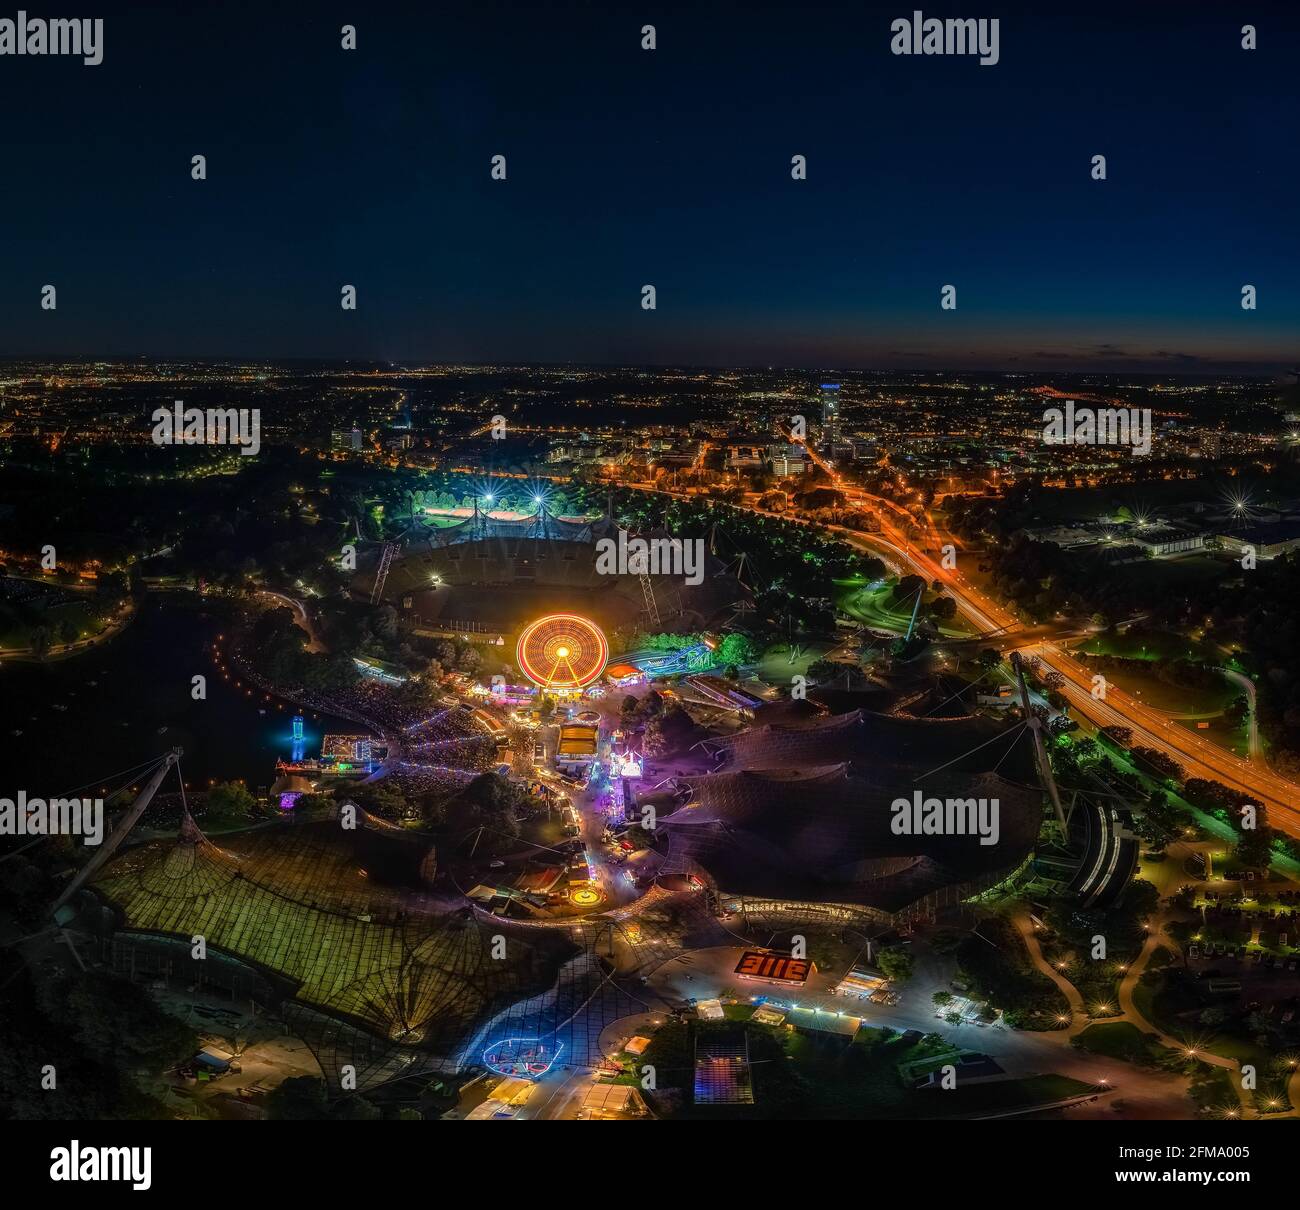 Une impressionnante photo de nuit au-dessus de Munich depuis la Tour Olympique au festival « Impark » la nuit avec une grande roue illuminée. Banque D'Images